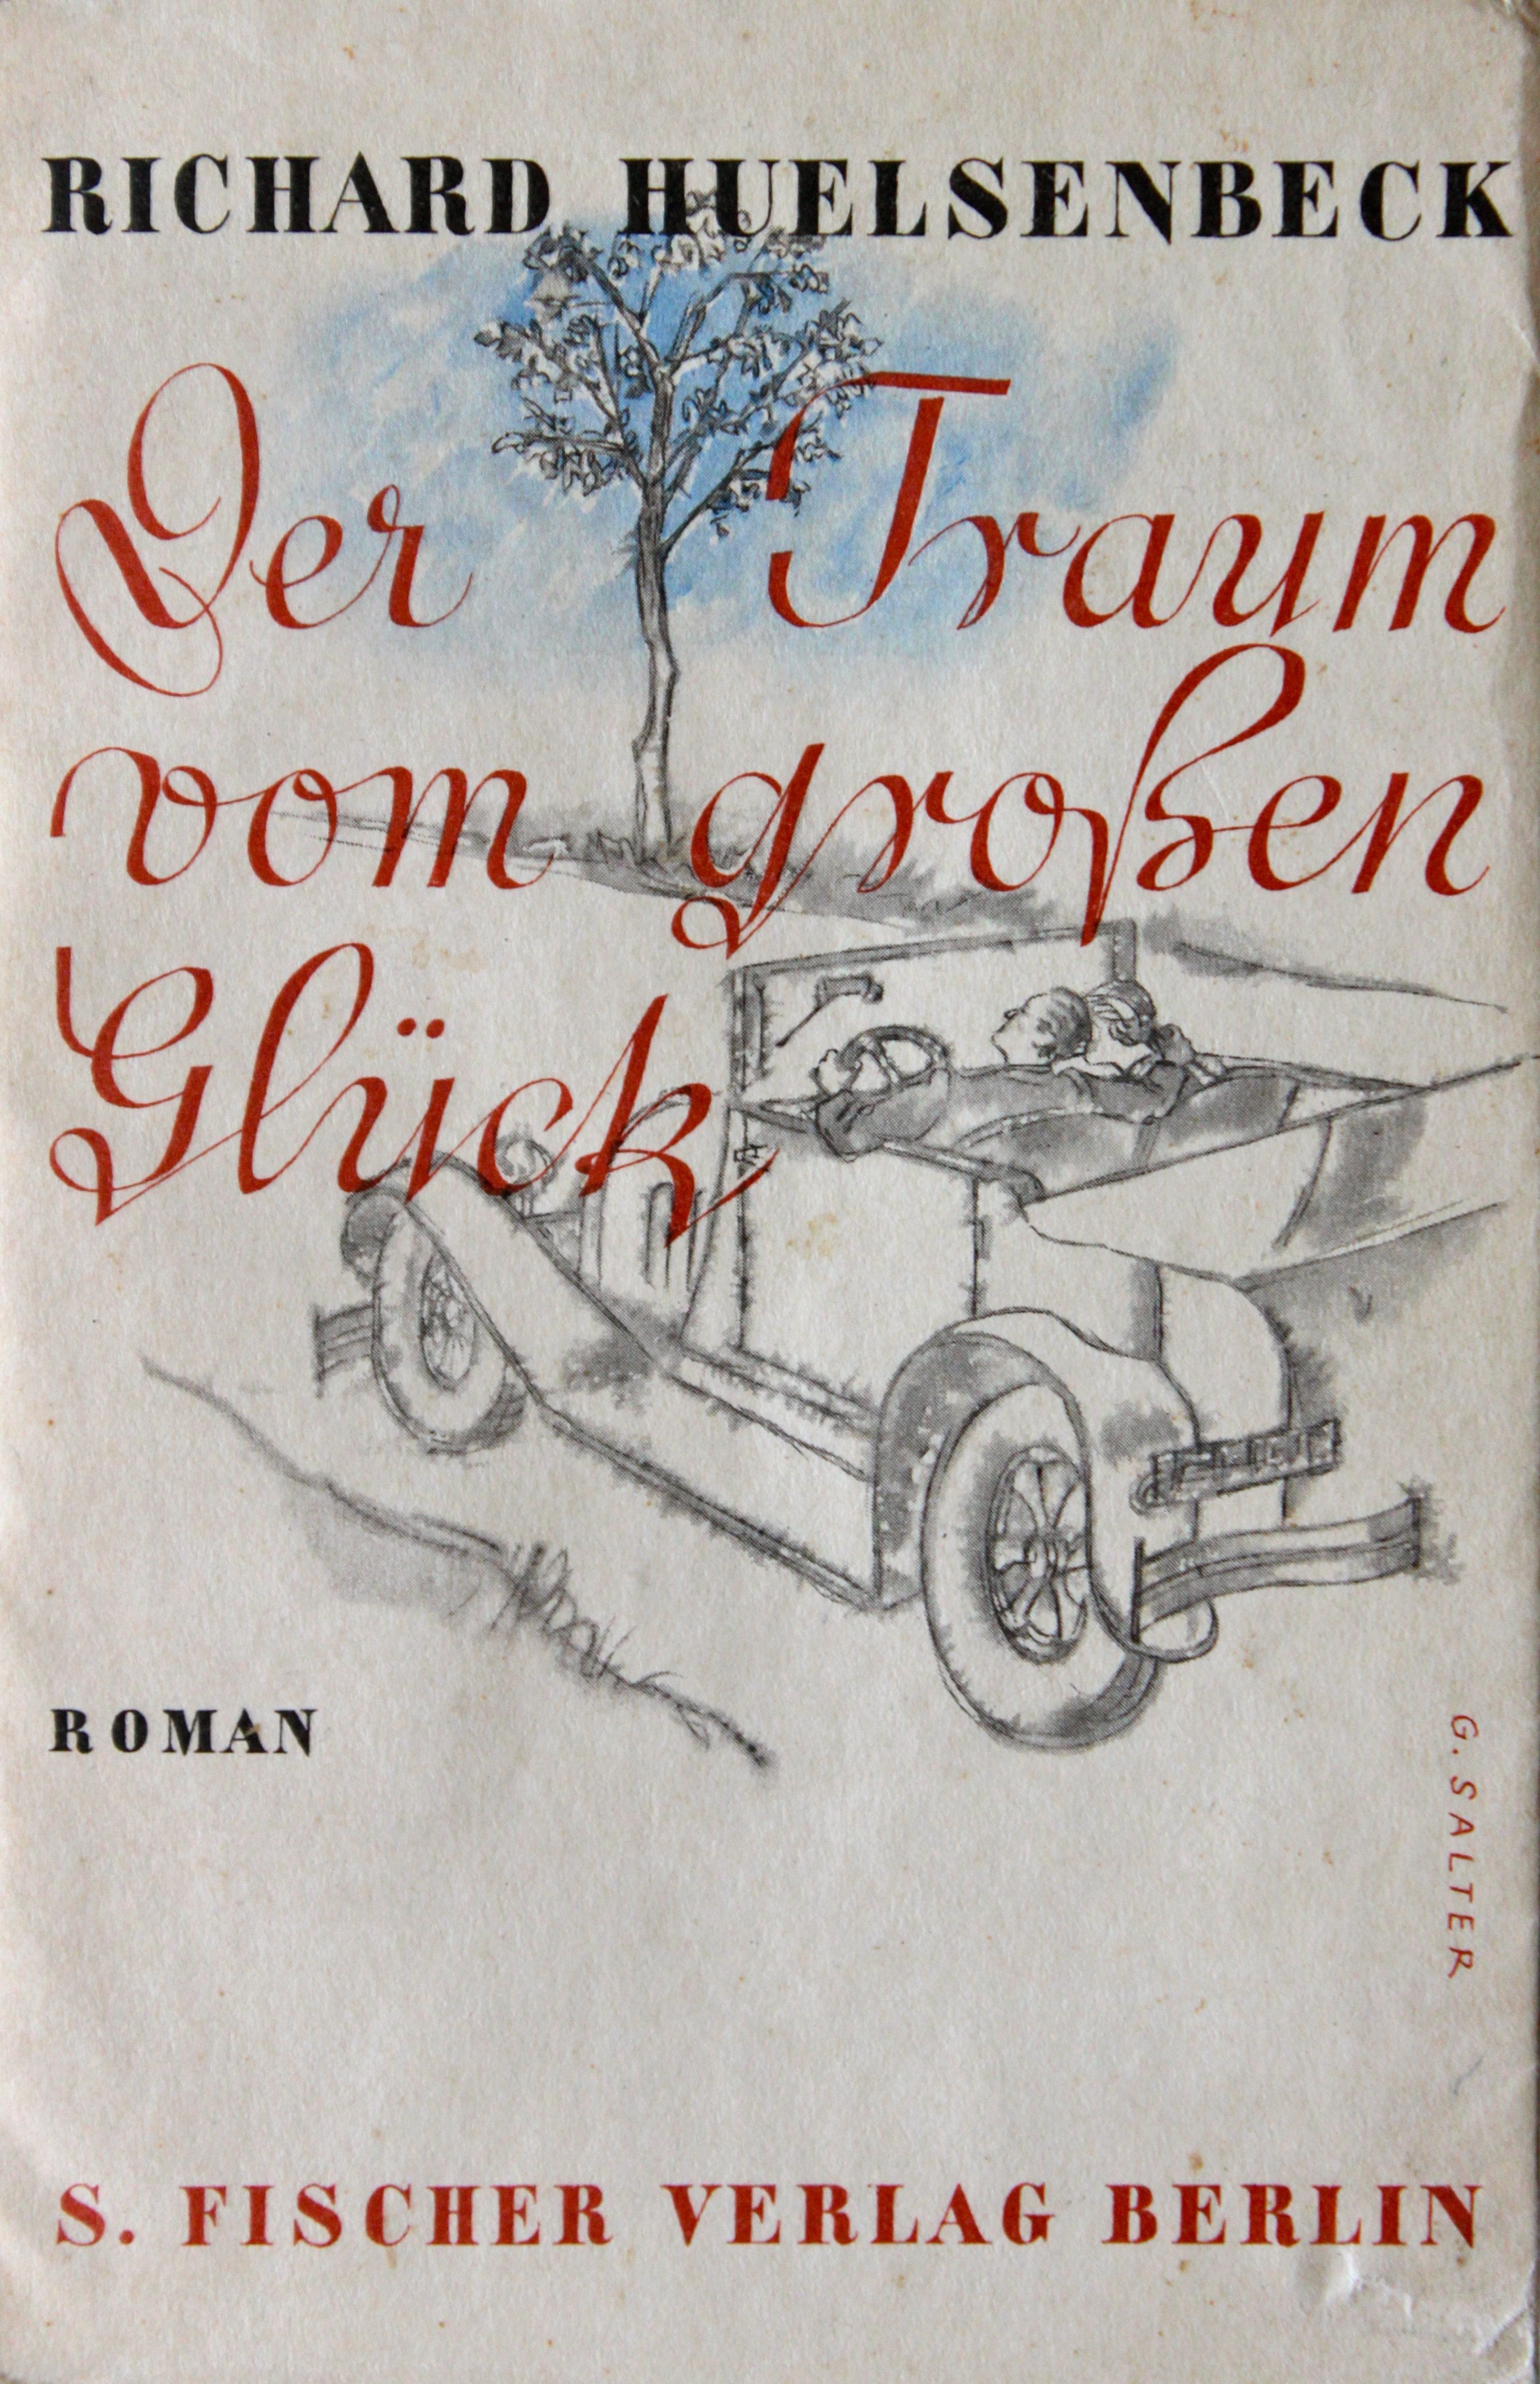 Richard Huelsenbeck, Der Traum vom großen Glück. S. Fischer, 1933